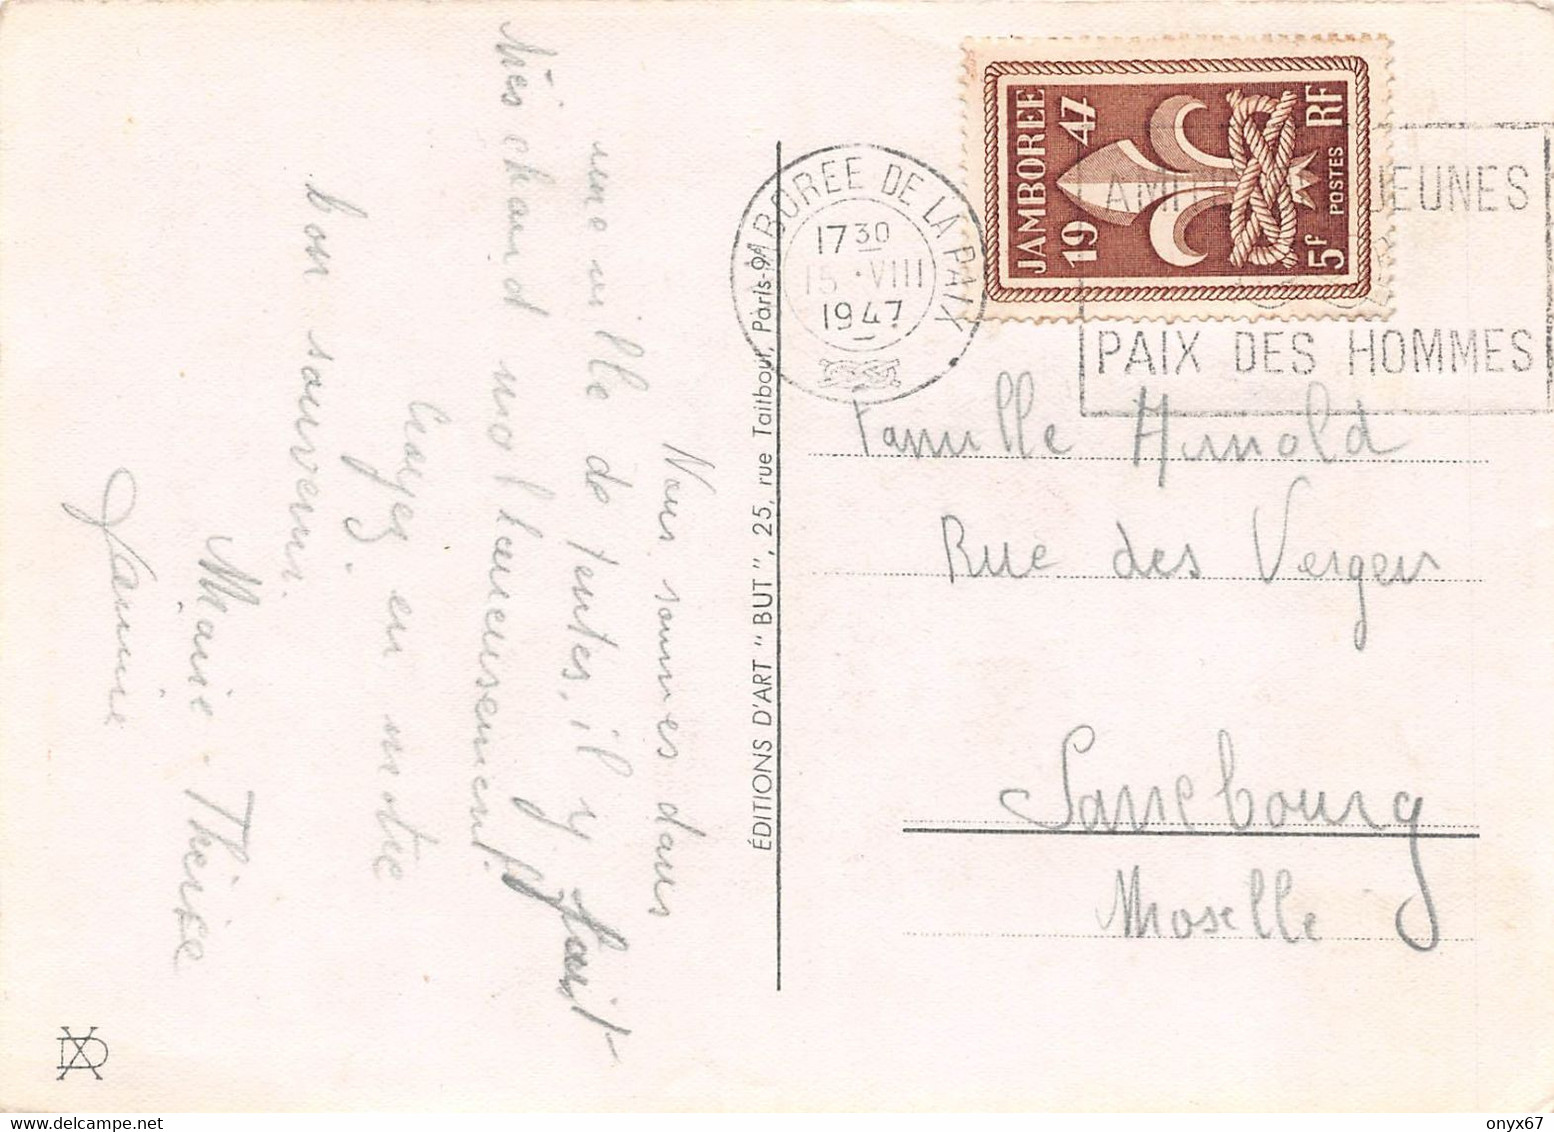 GF-SCOUTISME-SCOUT-Jeune Garçon-grenouille-Cachet-Tampon JAMBOREE De La Paix 1947-Timbre-Stamp-Briefmarke-GRAND FORMAT - Scouting